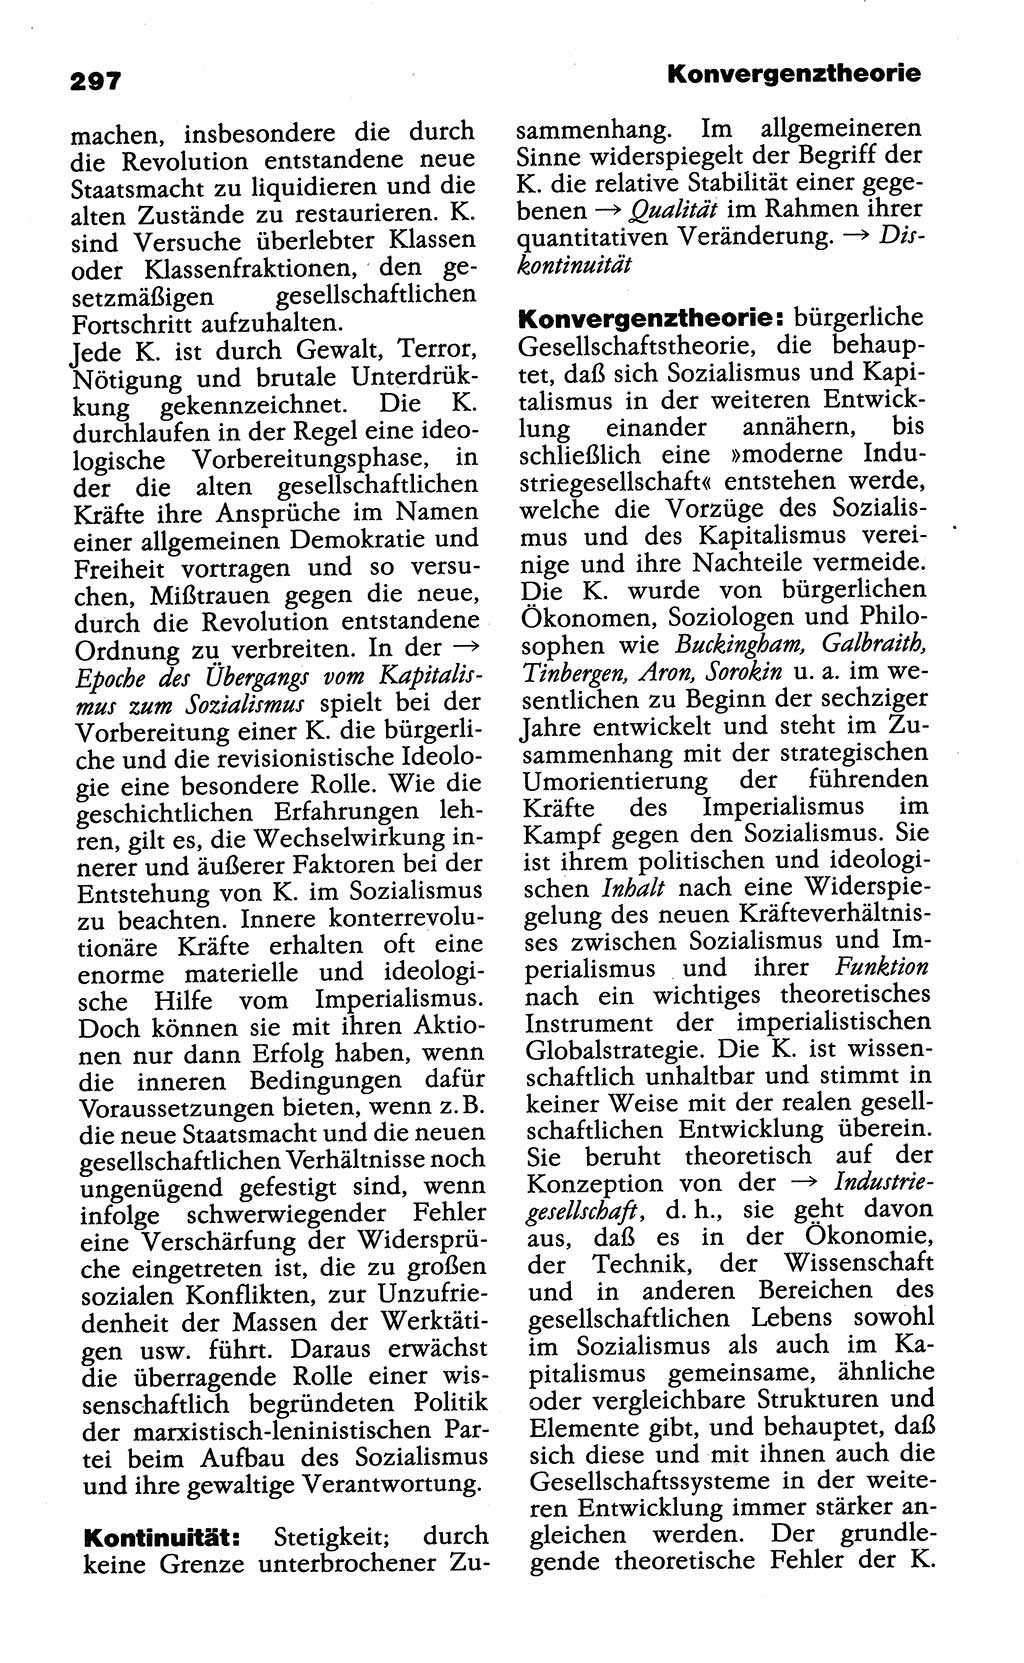 Wörterbuch der marxistisch-leninistischen Philosophie [Deutsche Demokratische Republik (DDR)] 1985, Seite 297 (Wb. ML Phil. DDR 1985, S. 297)